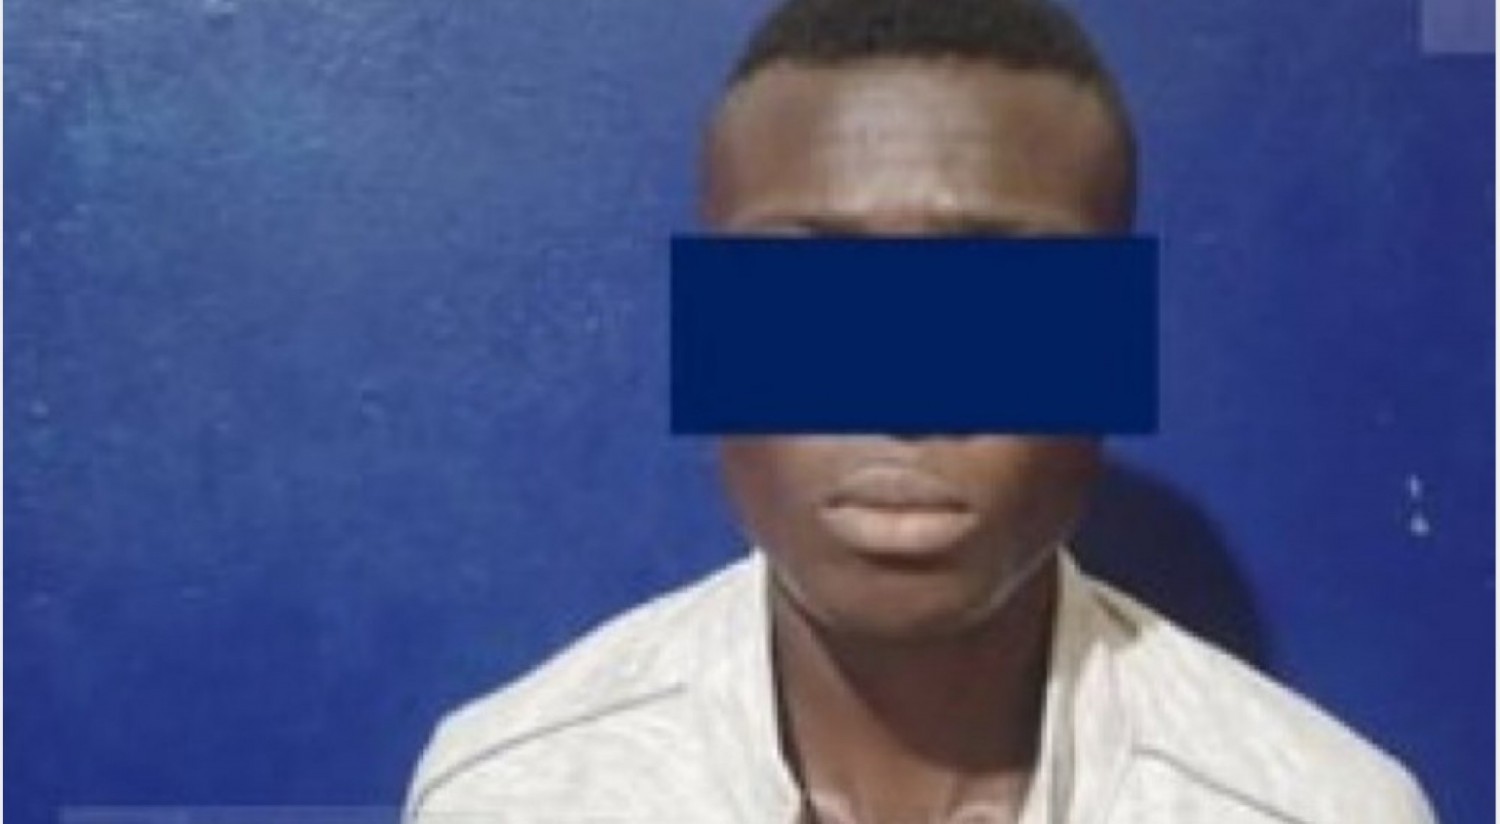 Côte d'Ivoire : Yamoussoukro, l'assassin présumé de trois personnes interpellé, les faits selon la police